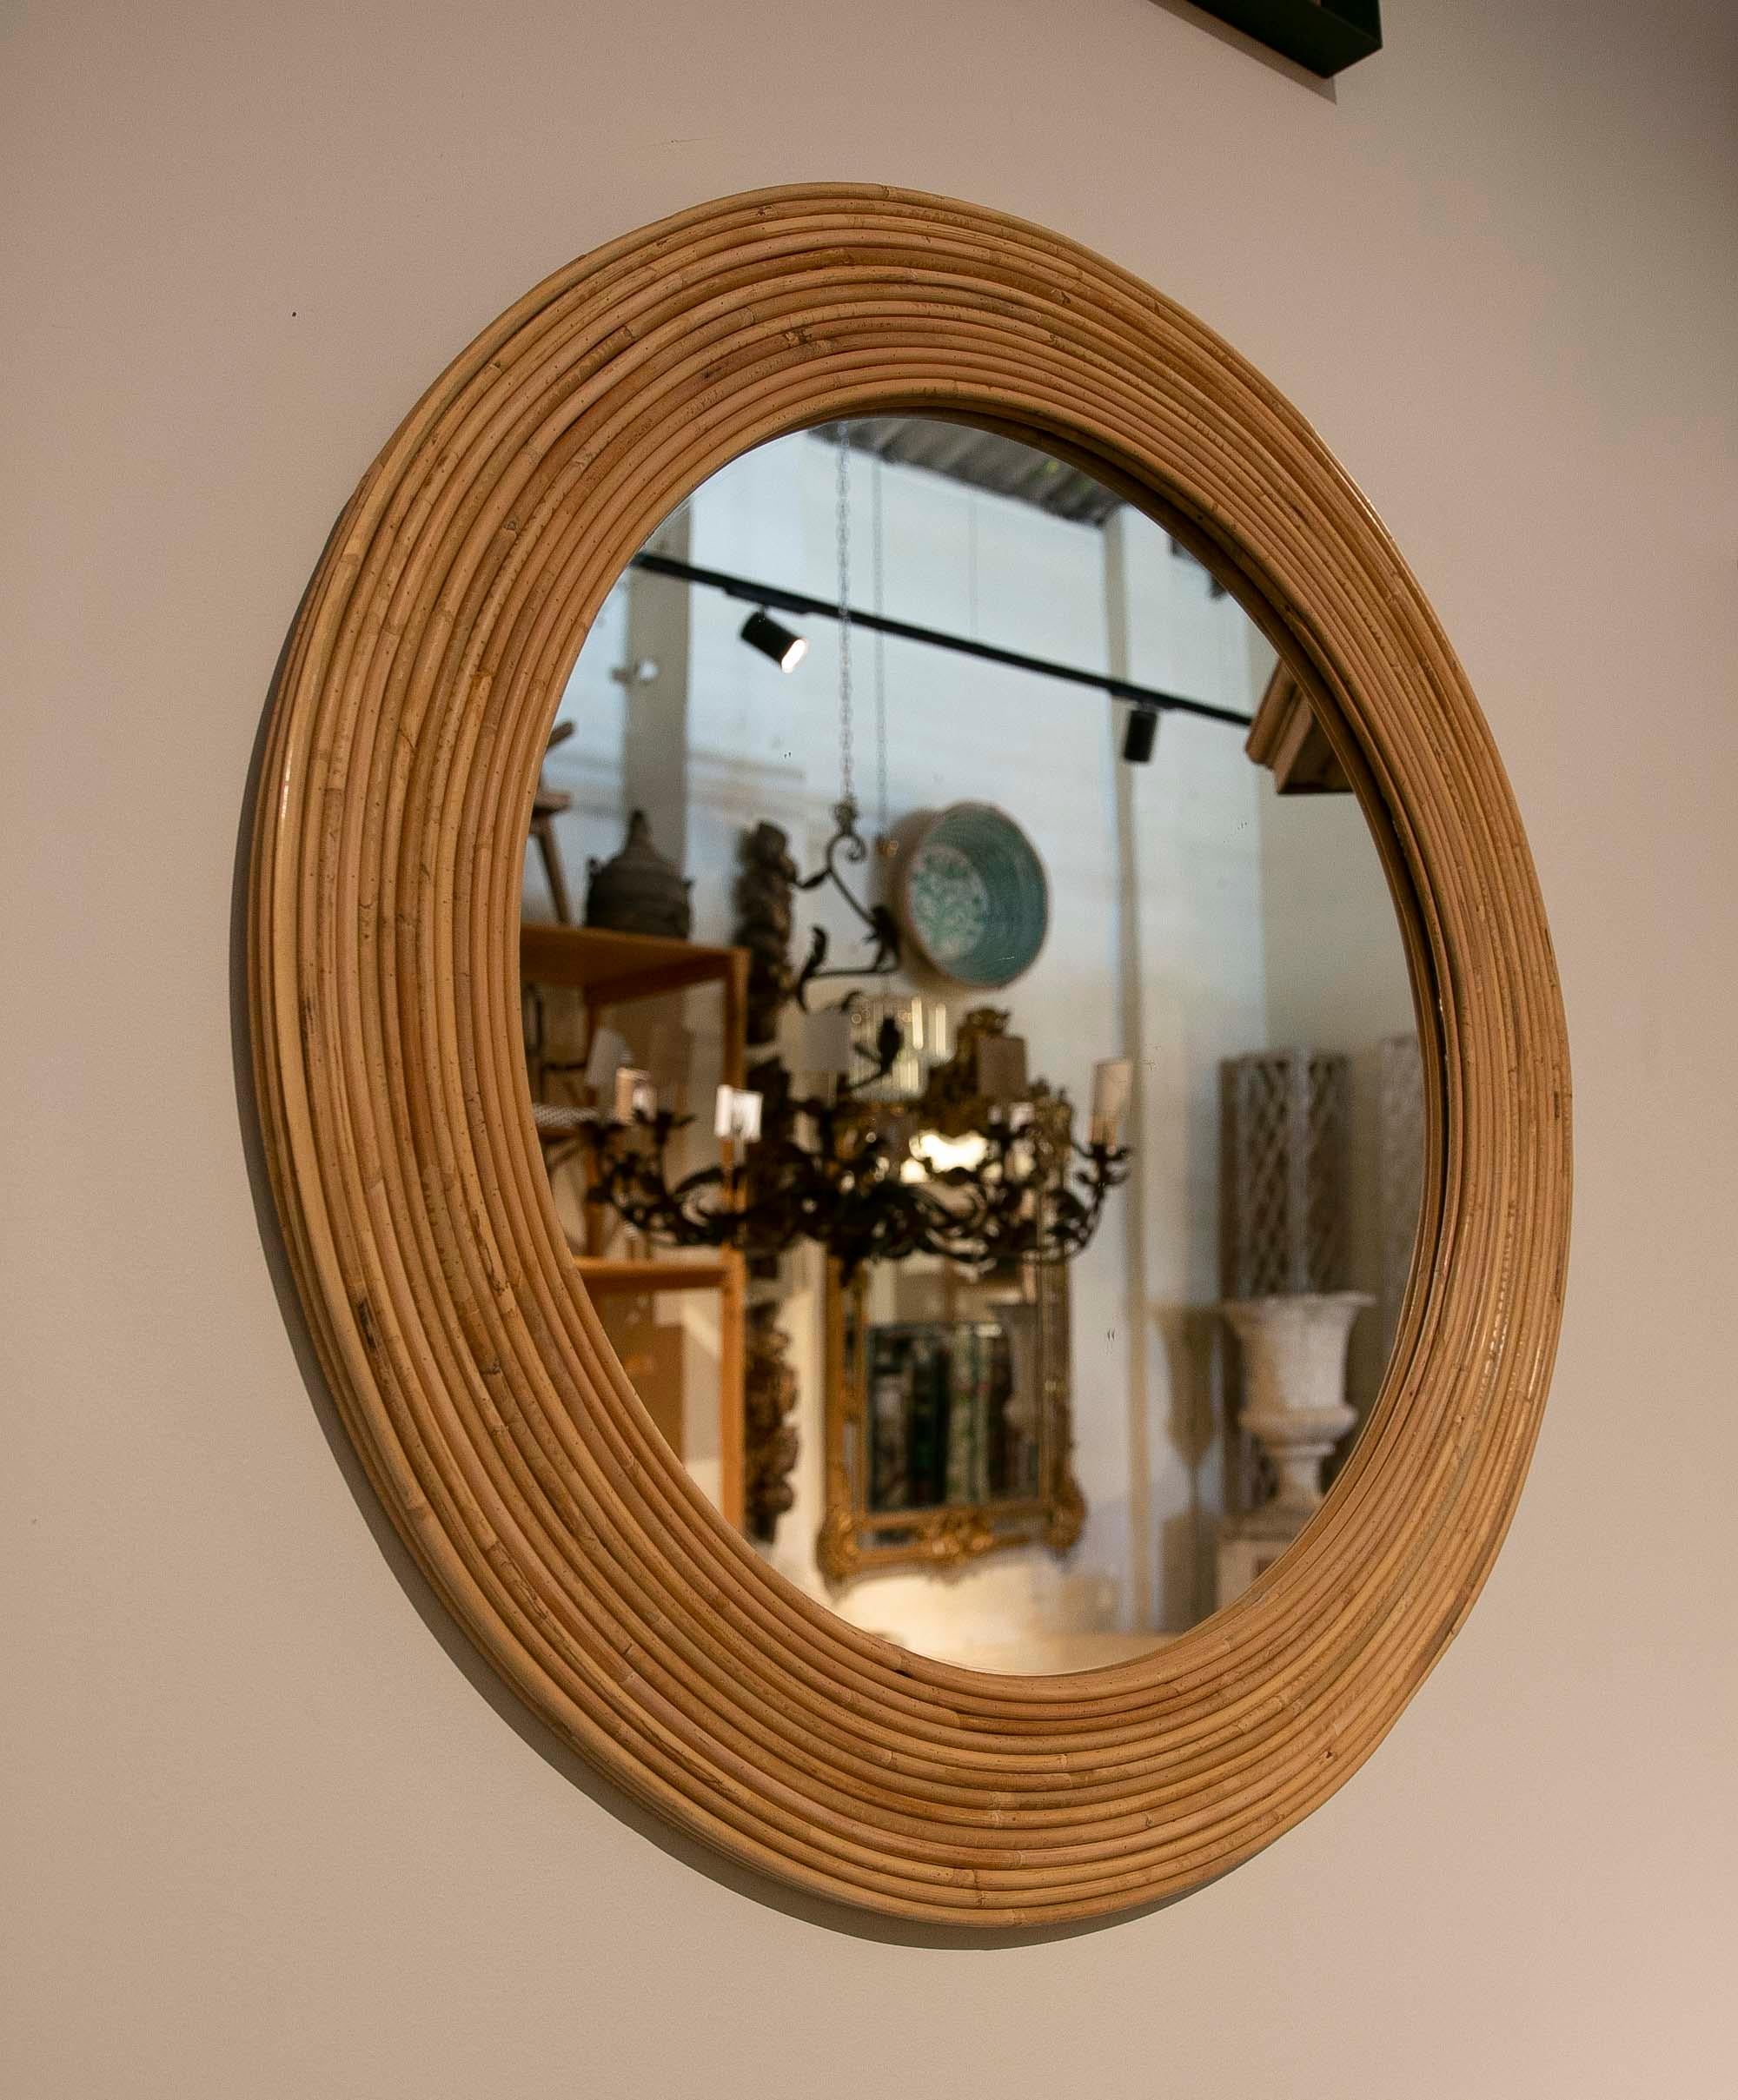 Pair of round handmade wicker wall mirrors.